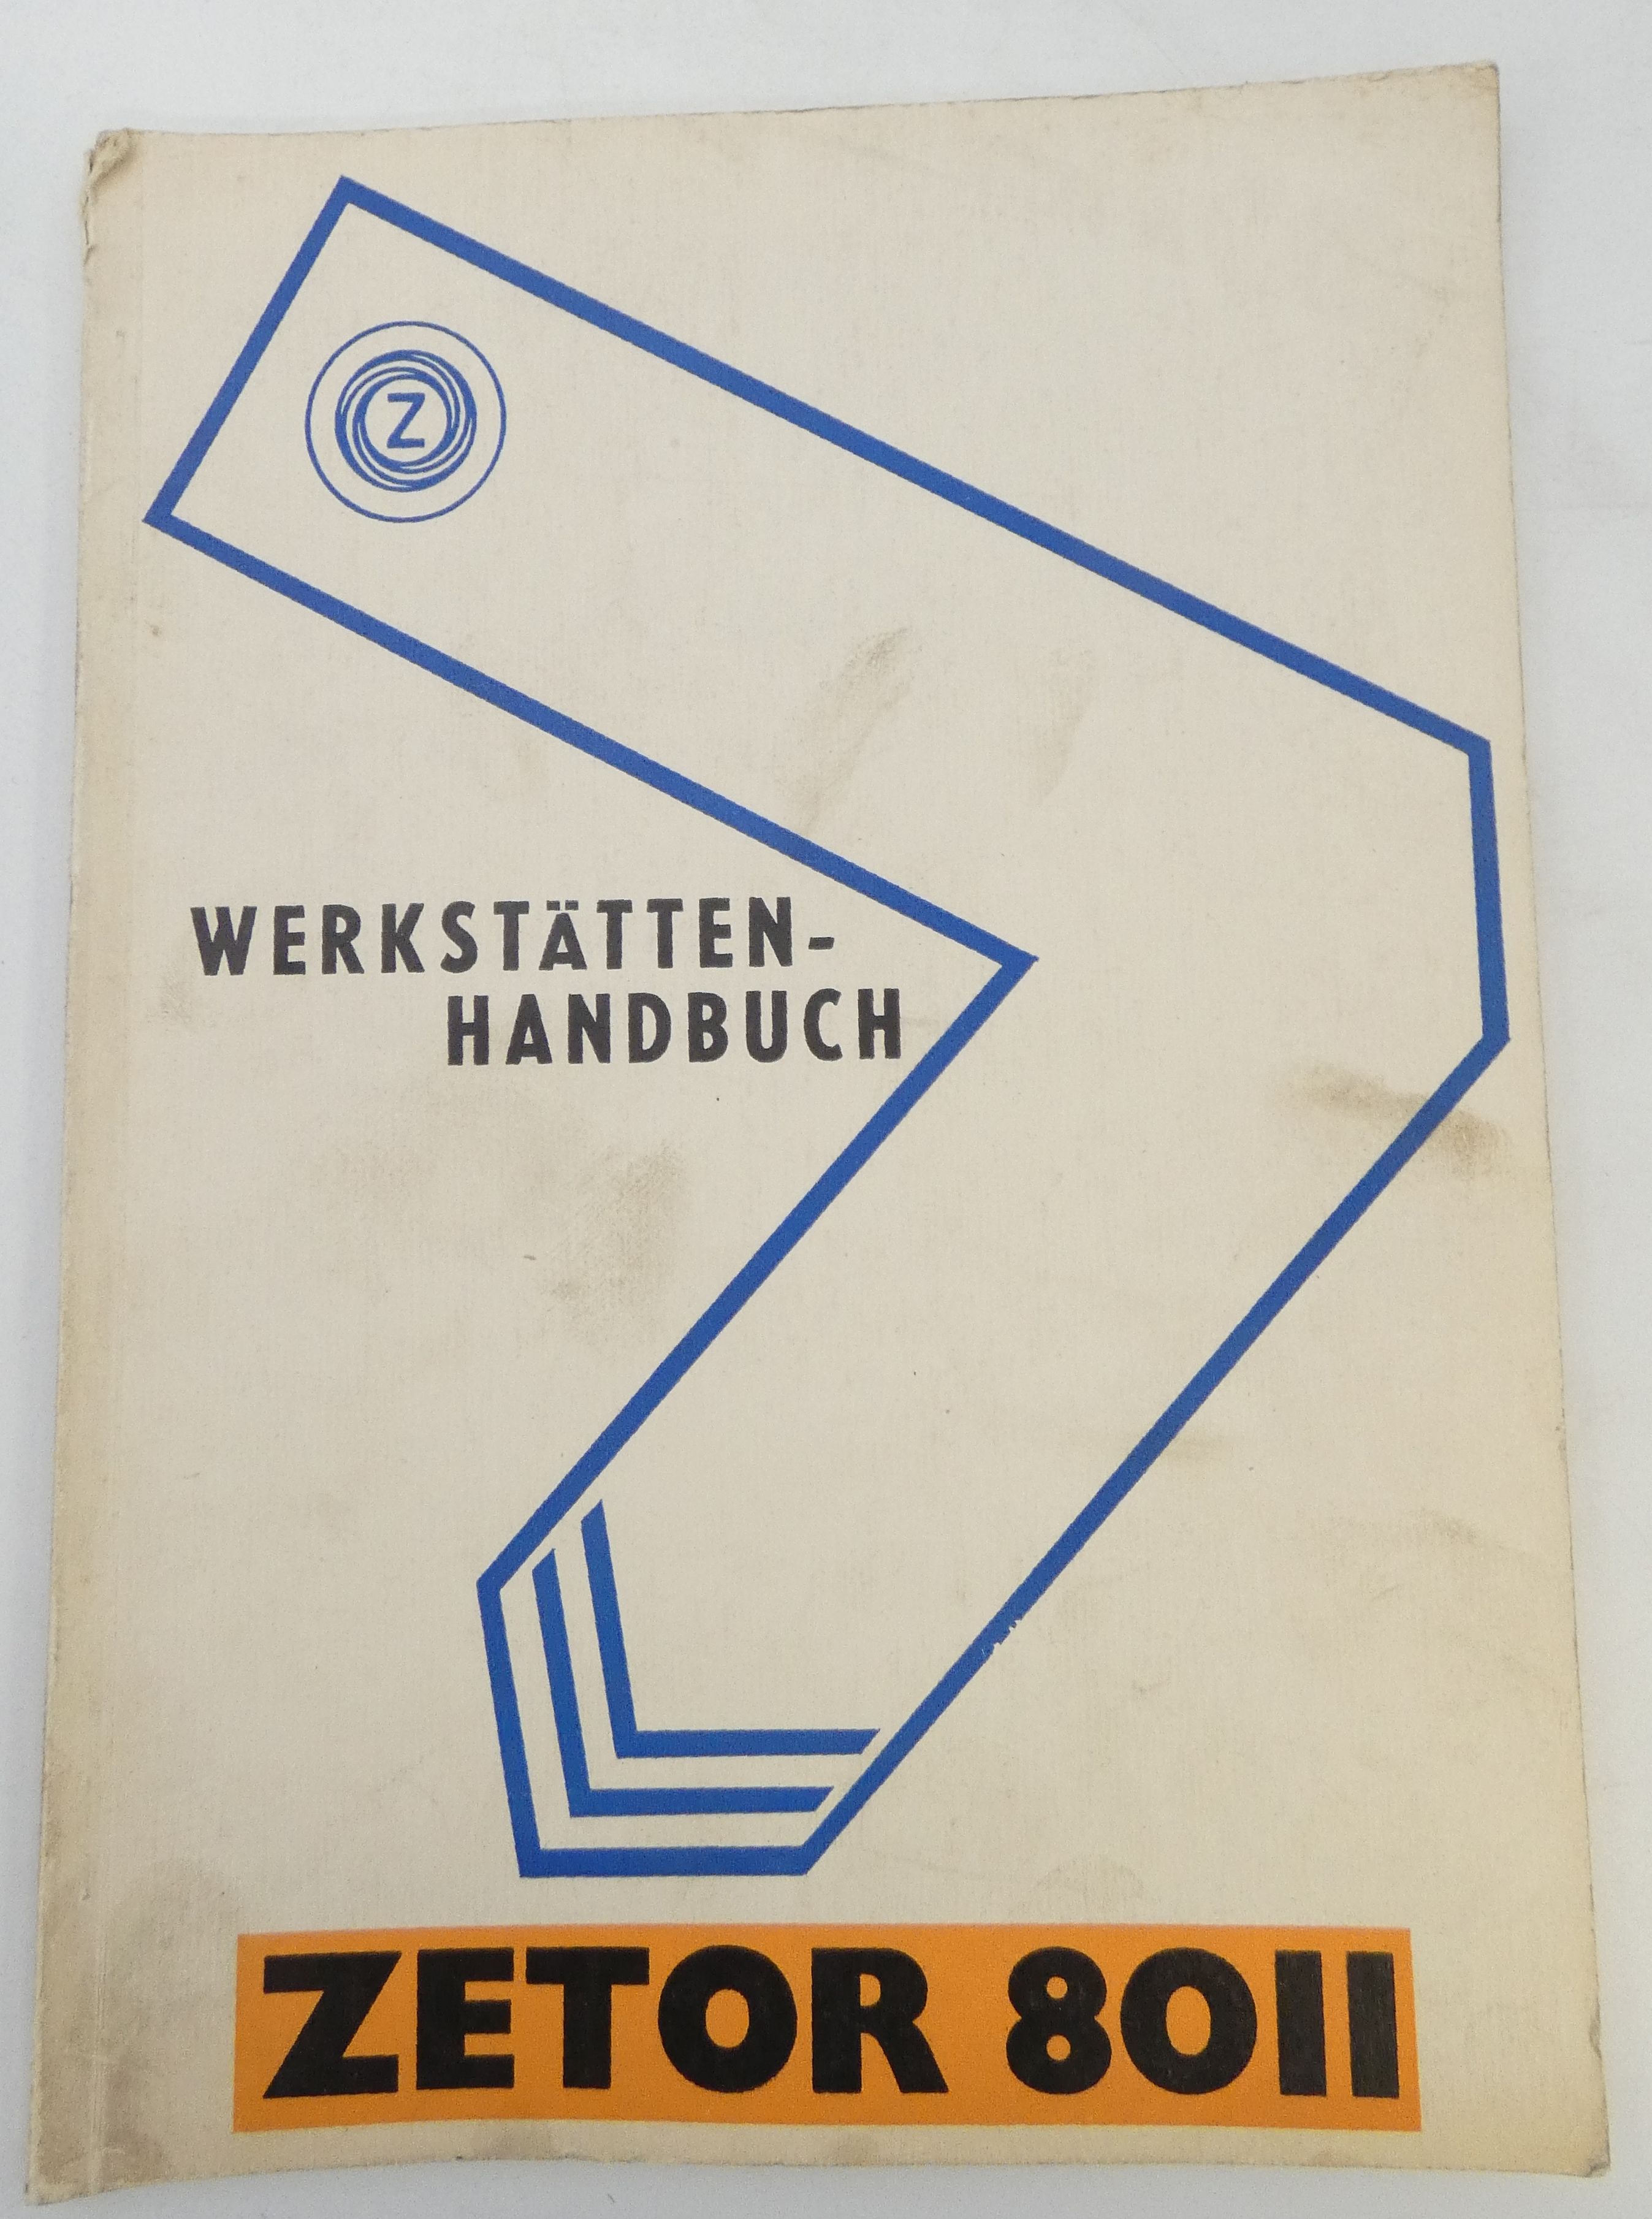 Zetor 8077 werkstättenhandbuch workshop manual